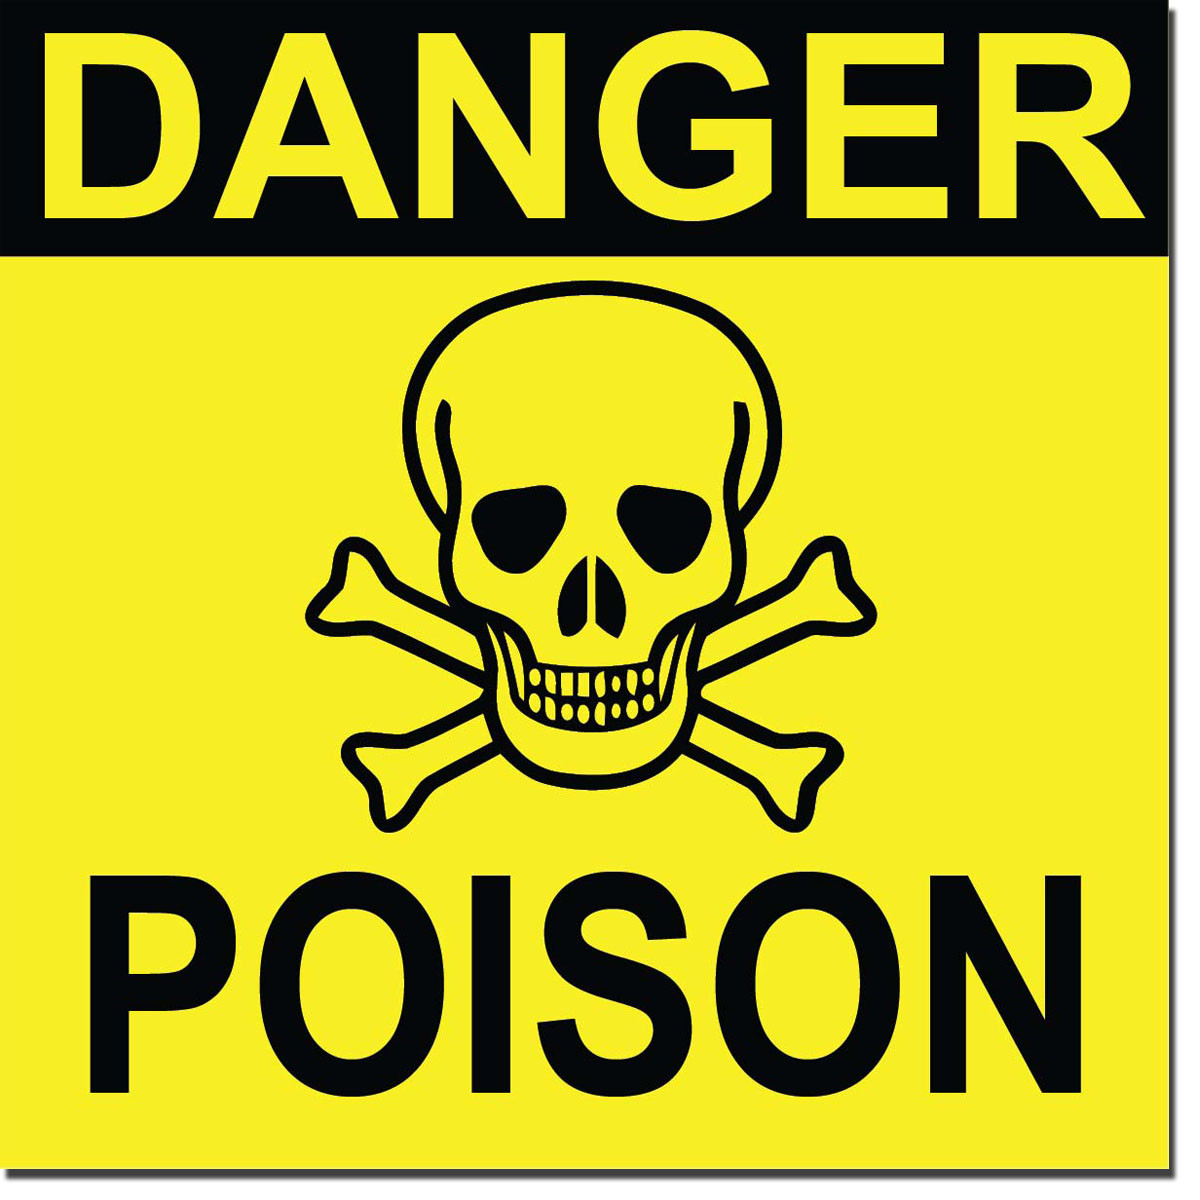 Poison Sign Clipart Danger Poison Sign Danger